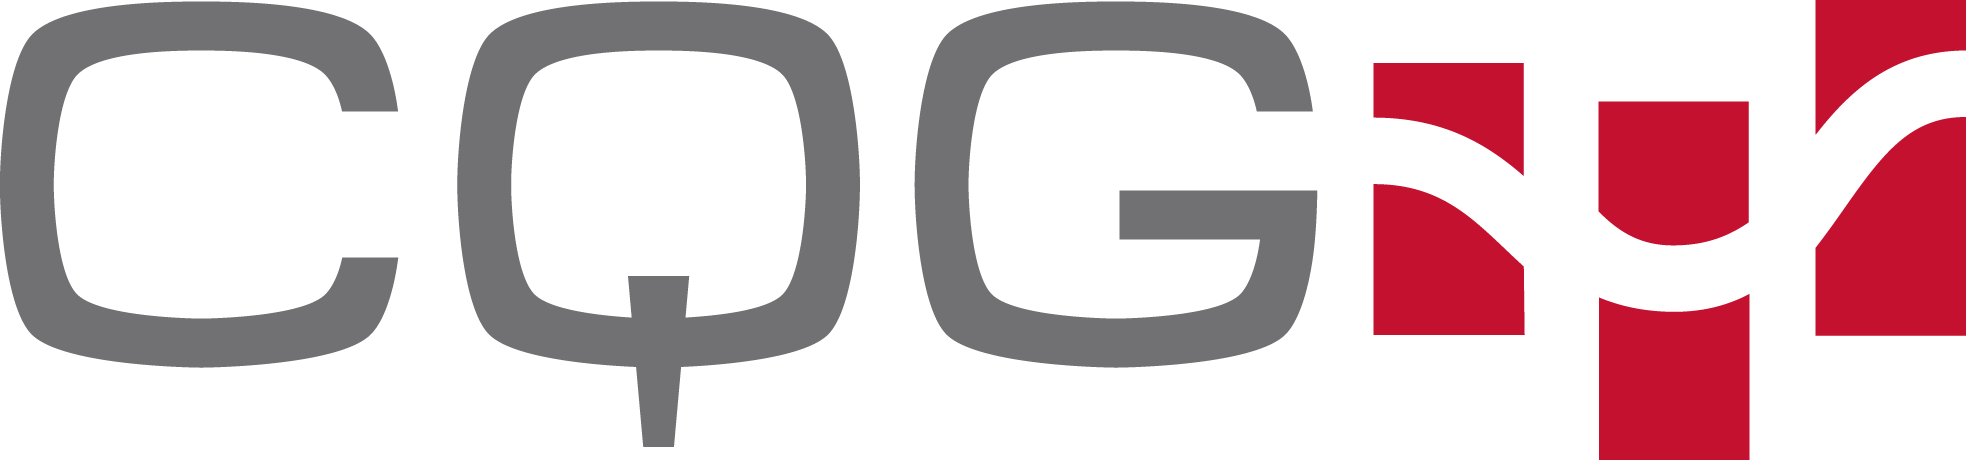 cqg_logo_color.png